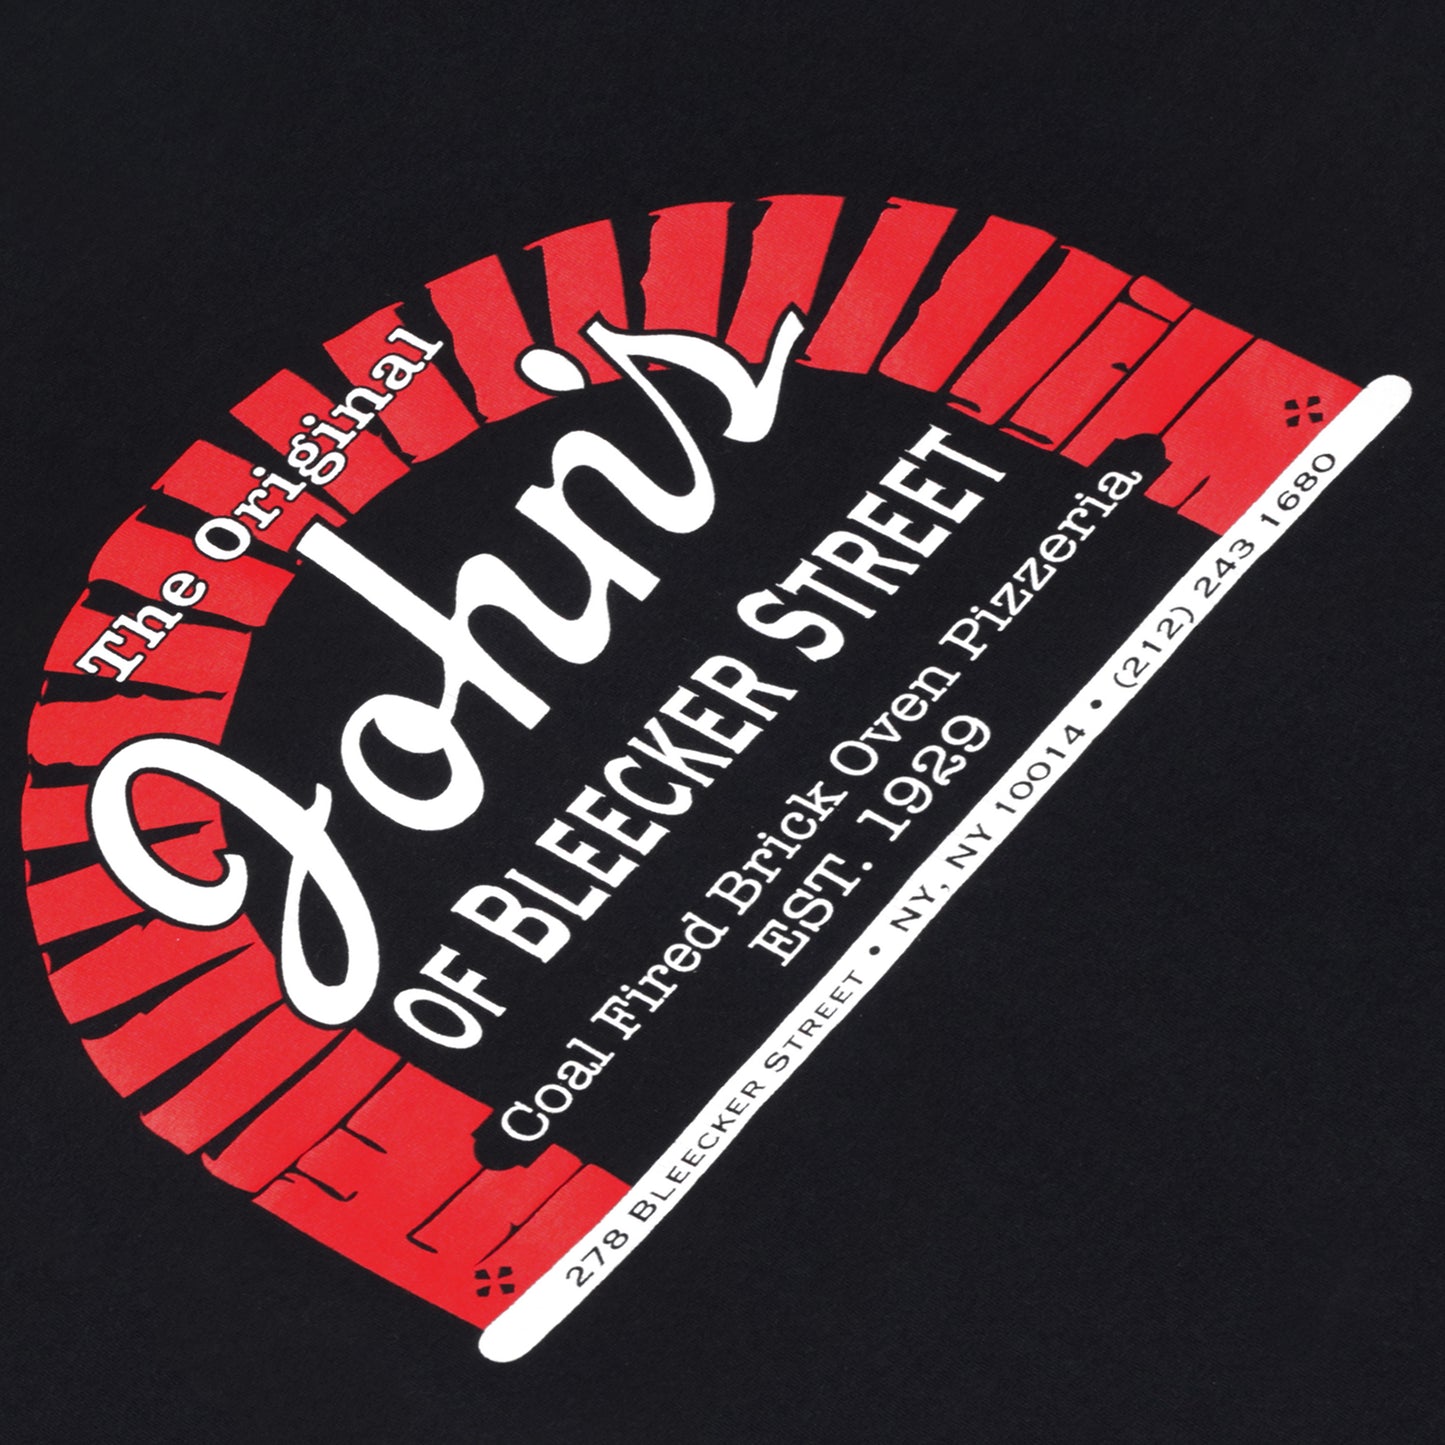 John's Pizzeria of Bleecker Street Black T-Shirt